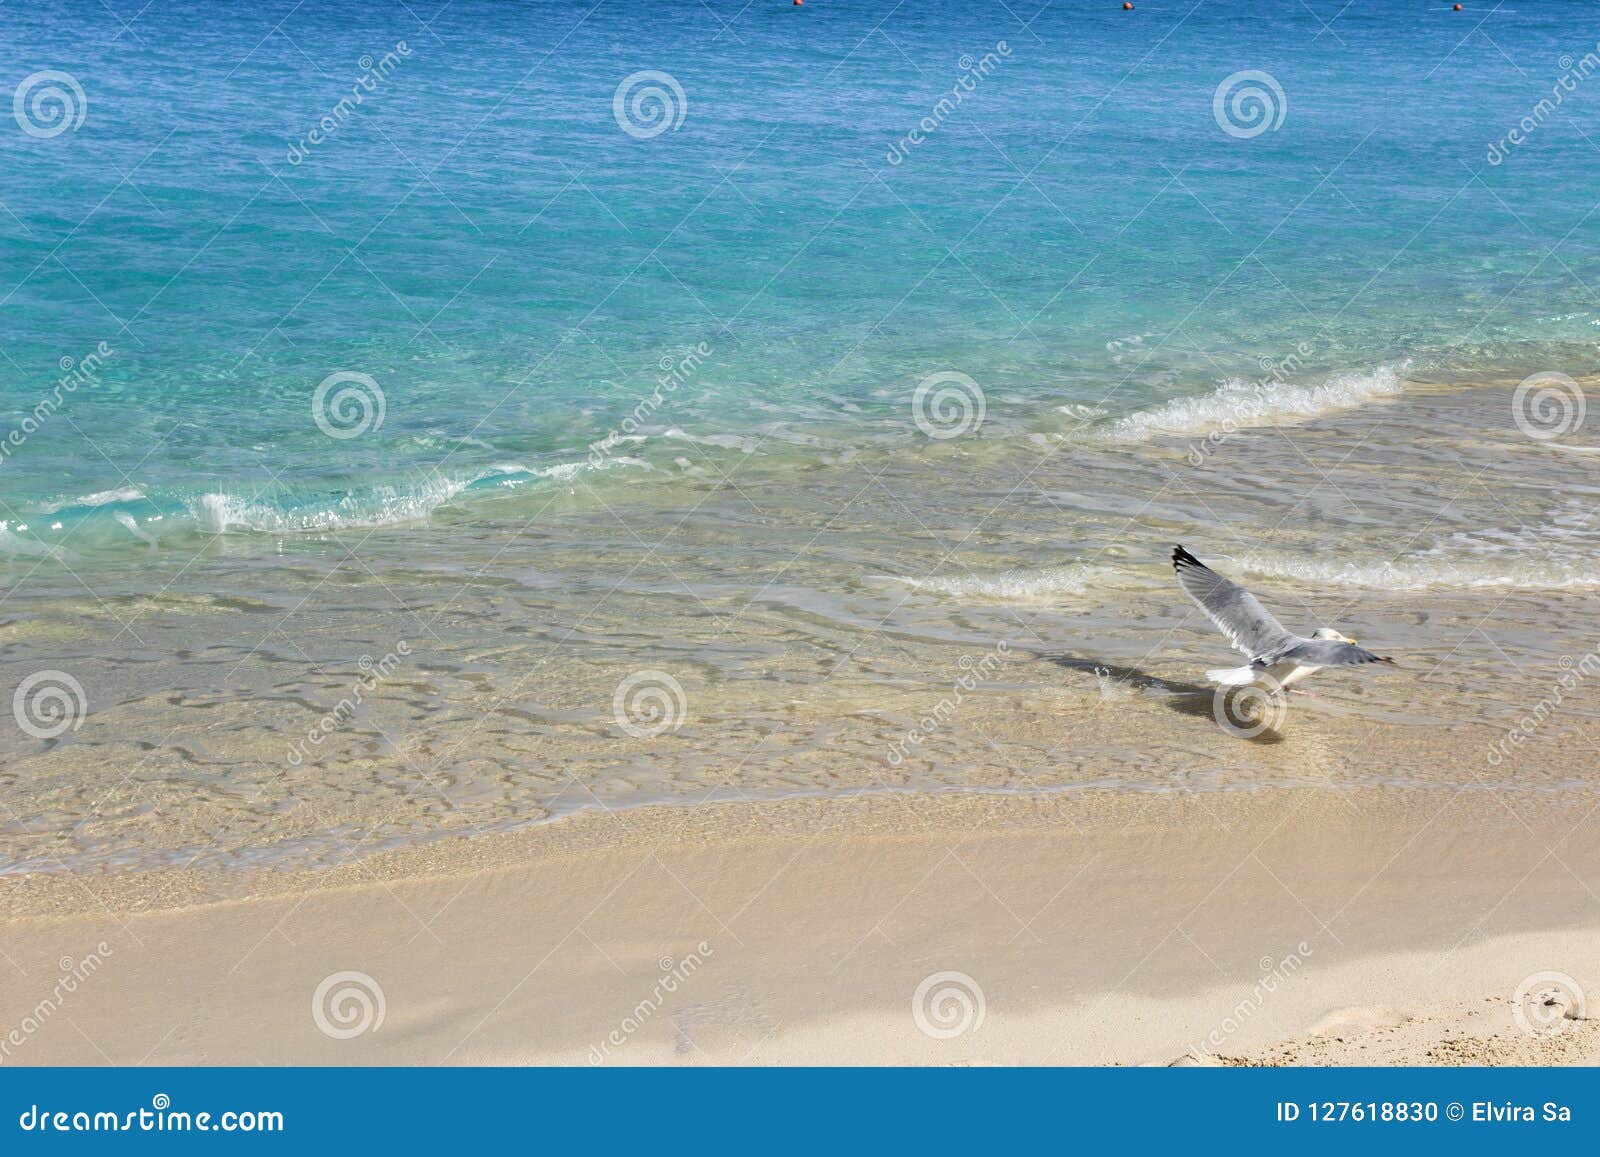 Karibisches Türkiswasser und weißer Sand Vogel im reinen Himmel